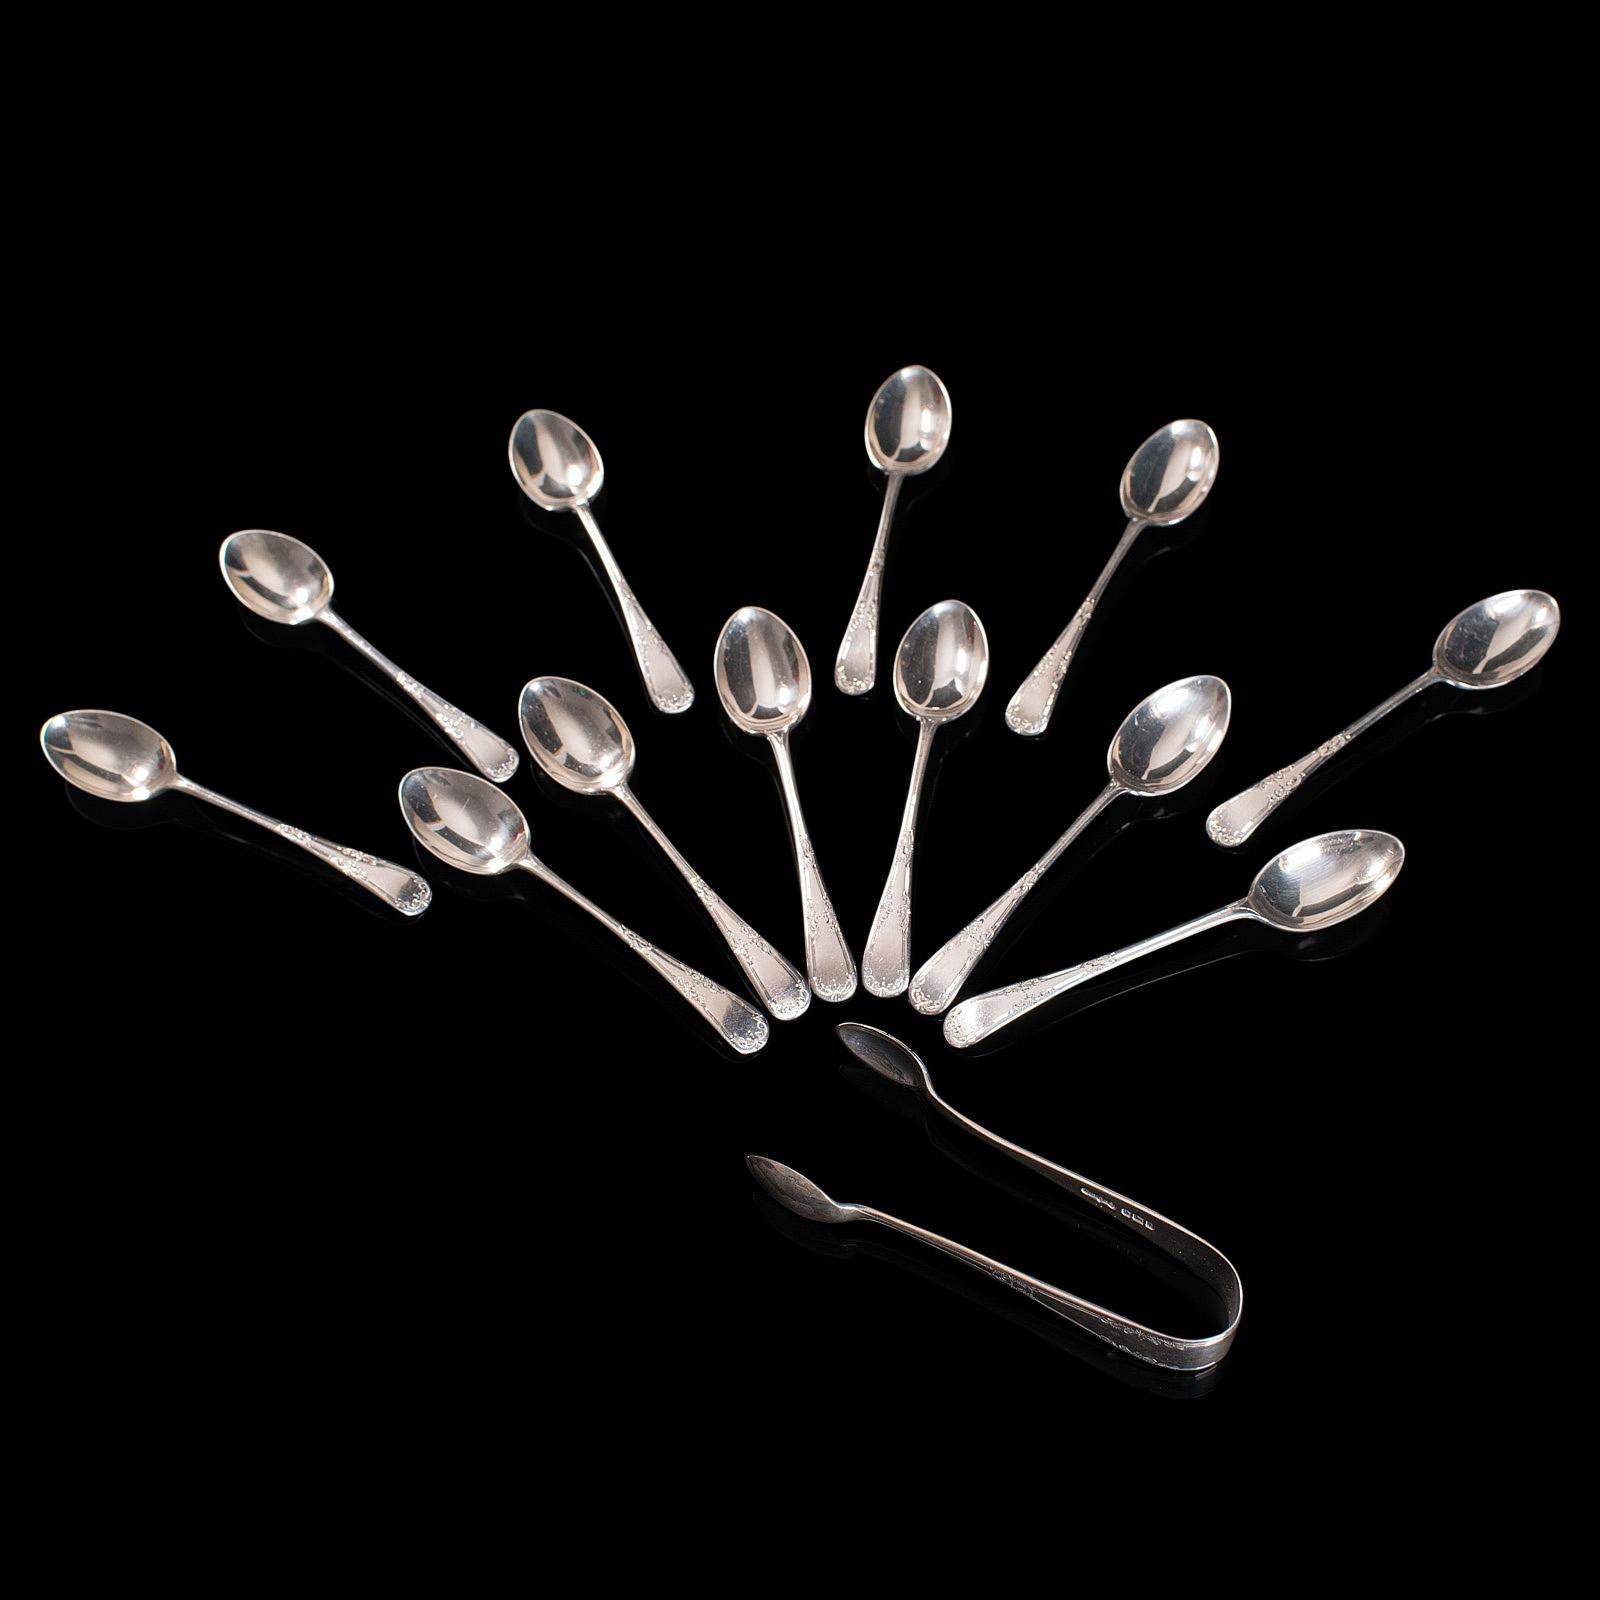 w.s.s & co. silver spoon